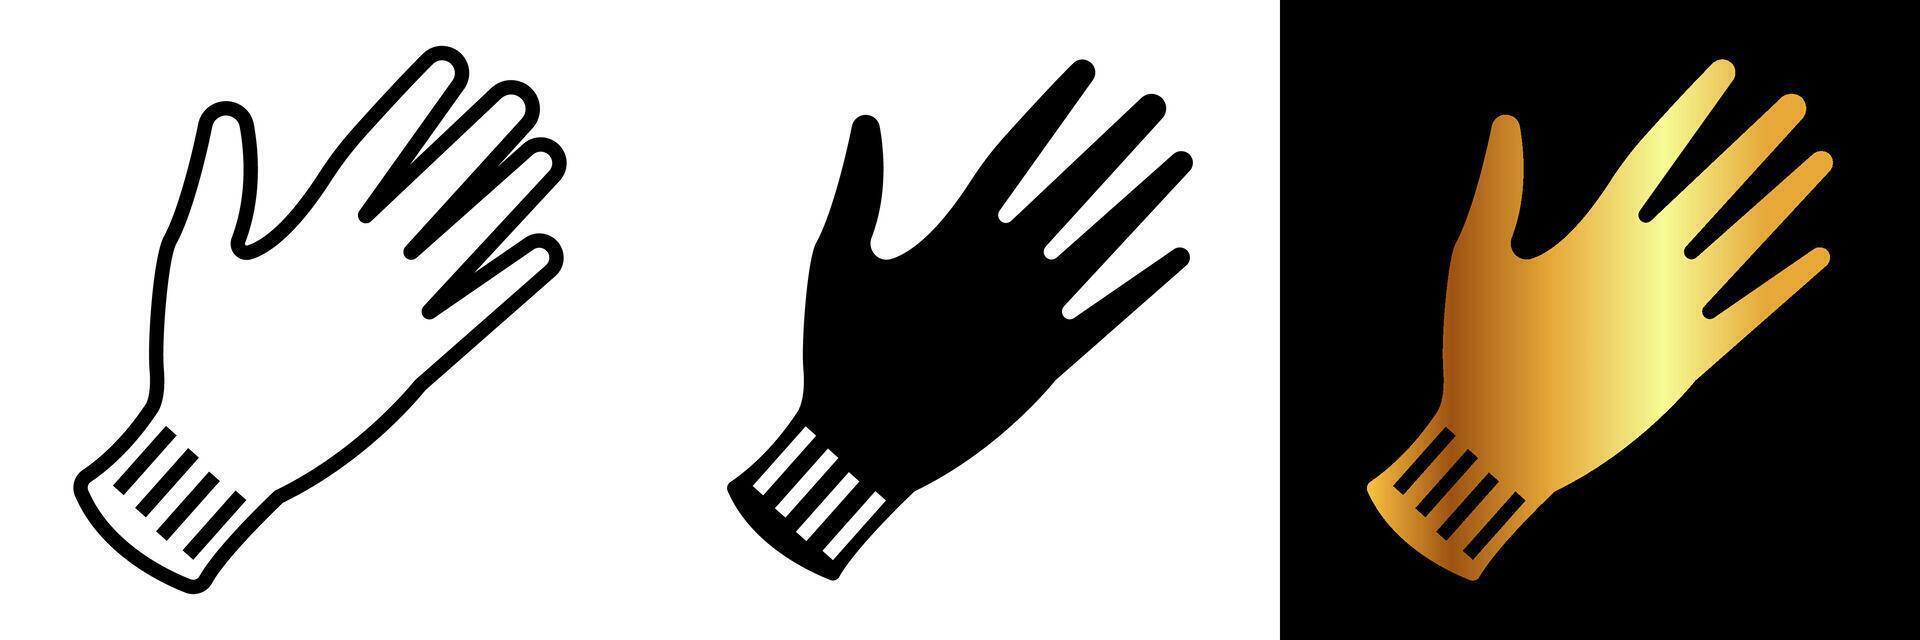 das Handschuhe Symbol symbolisiert Hand Schutz, präsentieren ein vielseitig Zubehörteil benutzt über verschiedene Branchen und Aktivitäten. vektor